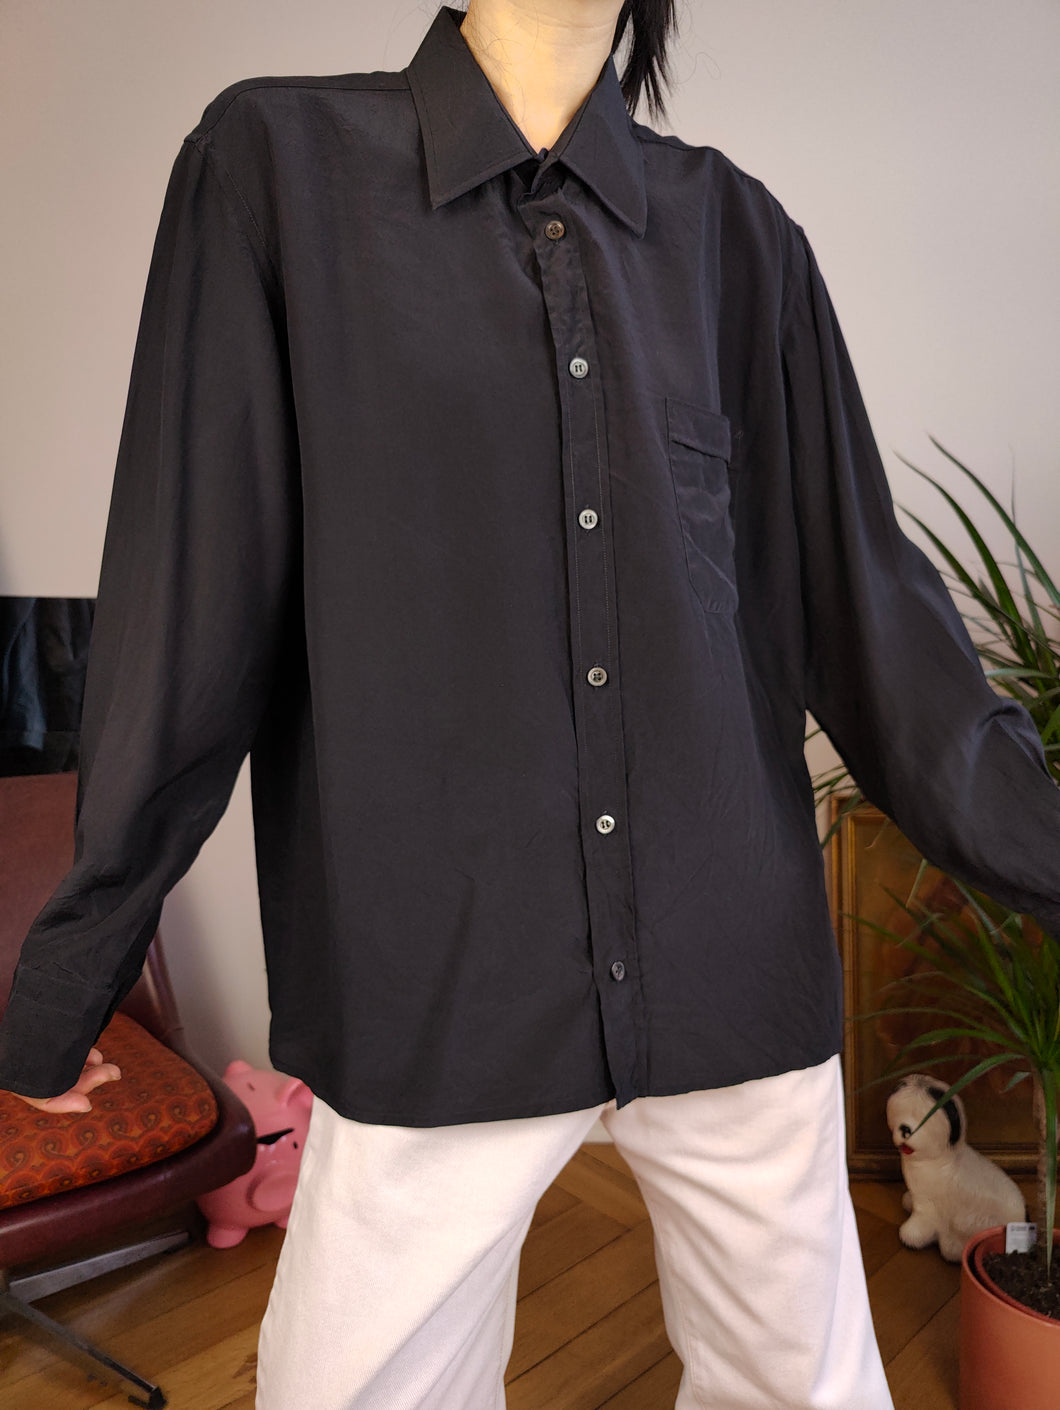 Vintage 100% silk shirt blouse black long sleeve button up plain women unisex men S-M